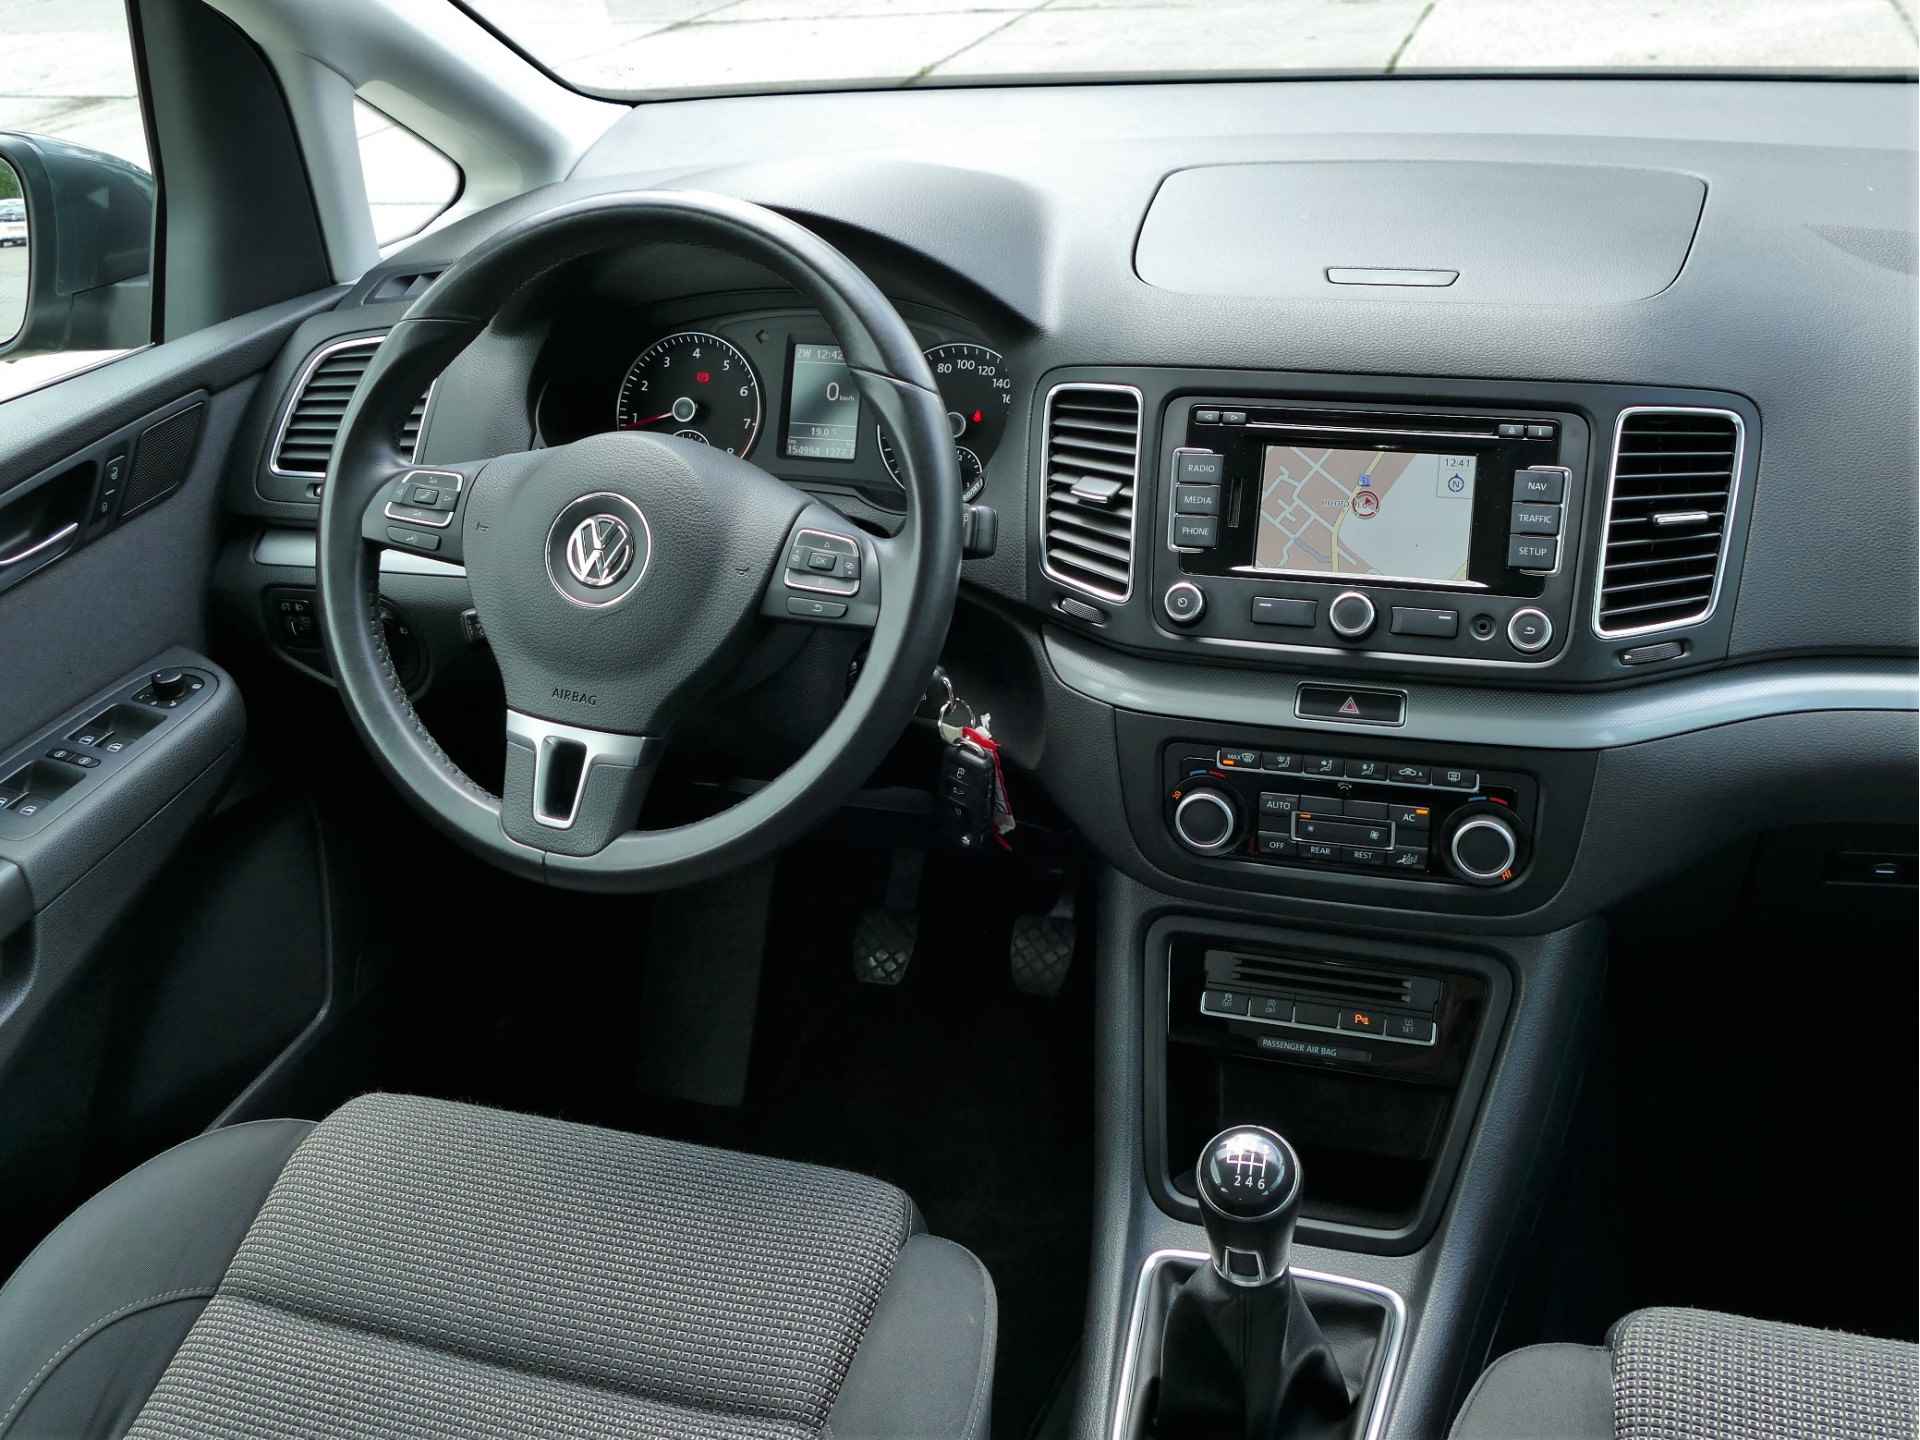 Volkswagen Sharan 1.4 TSI Comfortline 7 persoons | navigatie | cruise control - 6/49